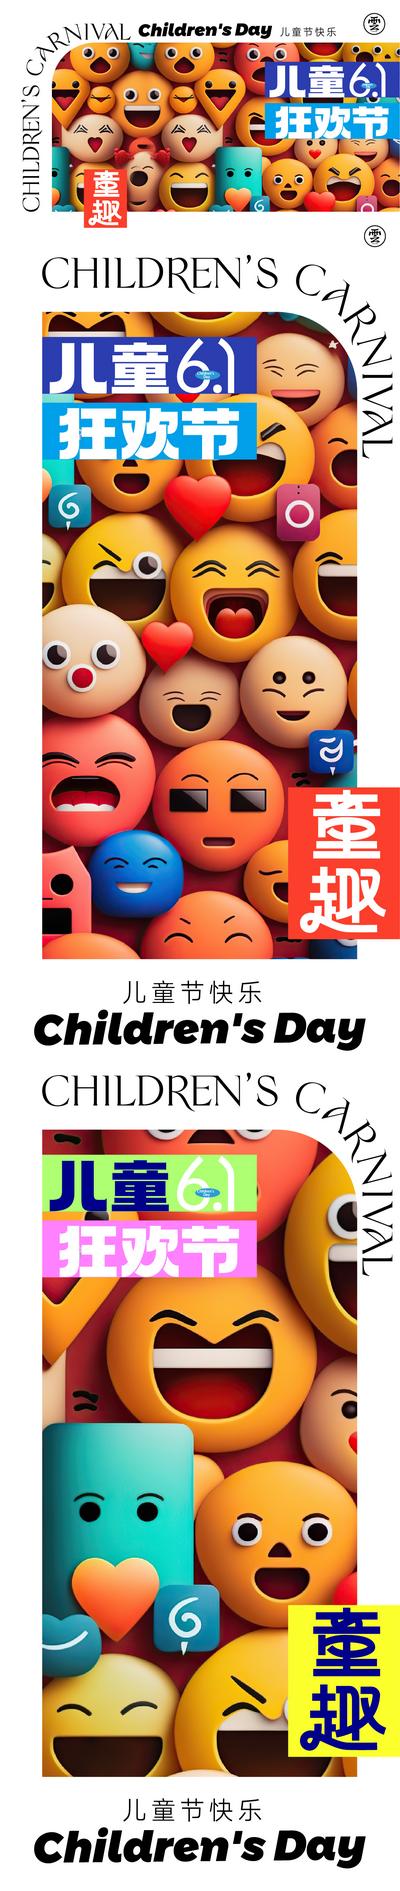 【南门网】海报 公历节日 房地产 儿童节 61 c4d 笑脸 表情包 童趣 狂欢 趣味 系列